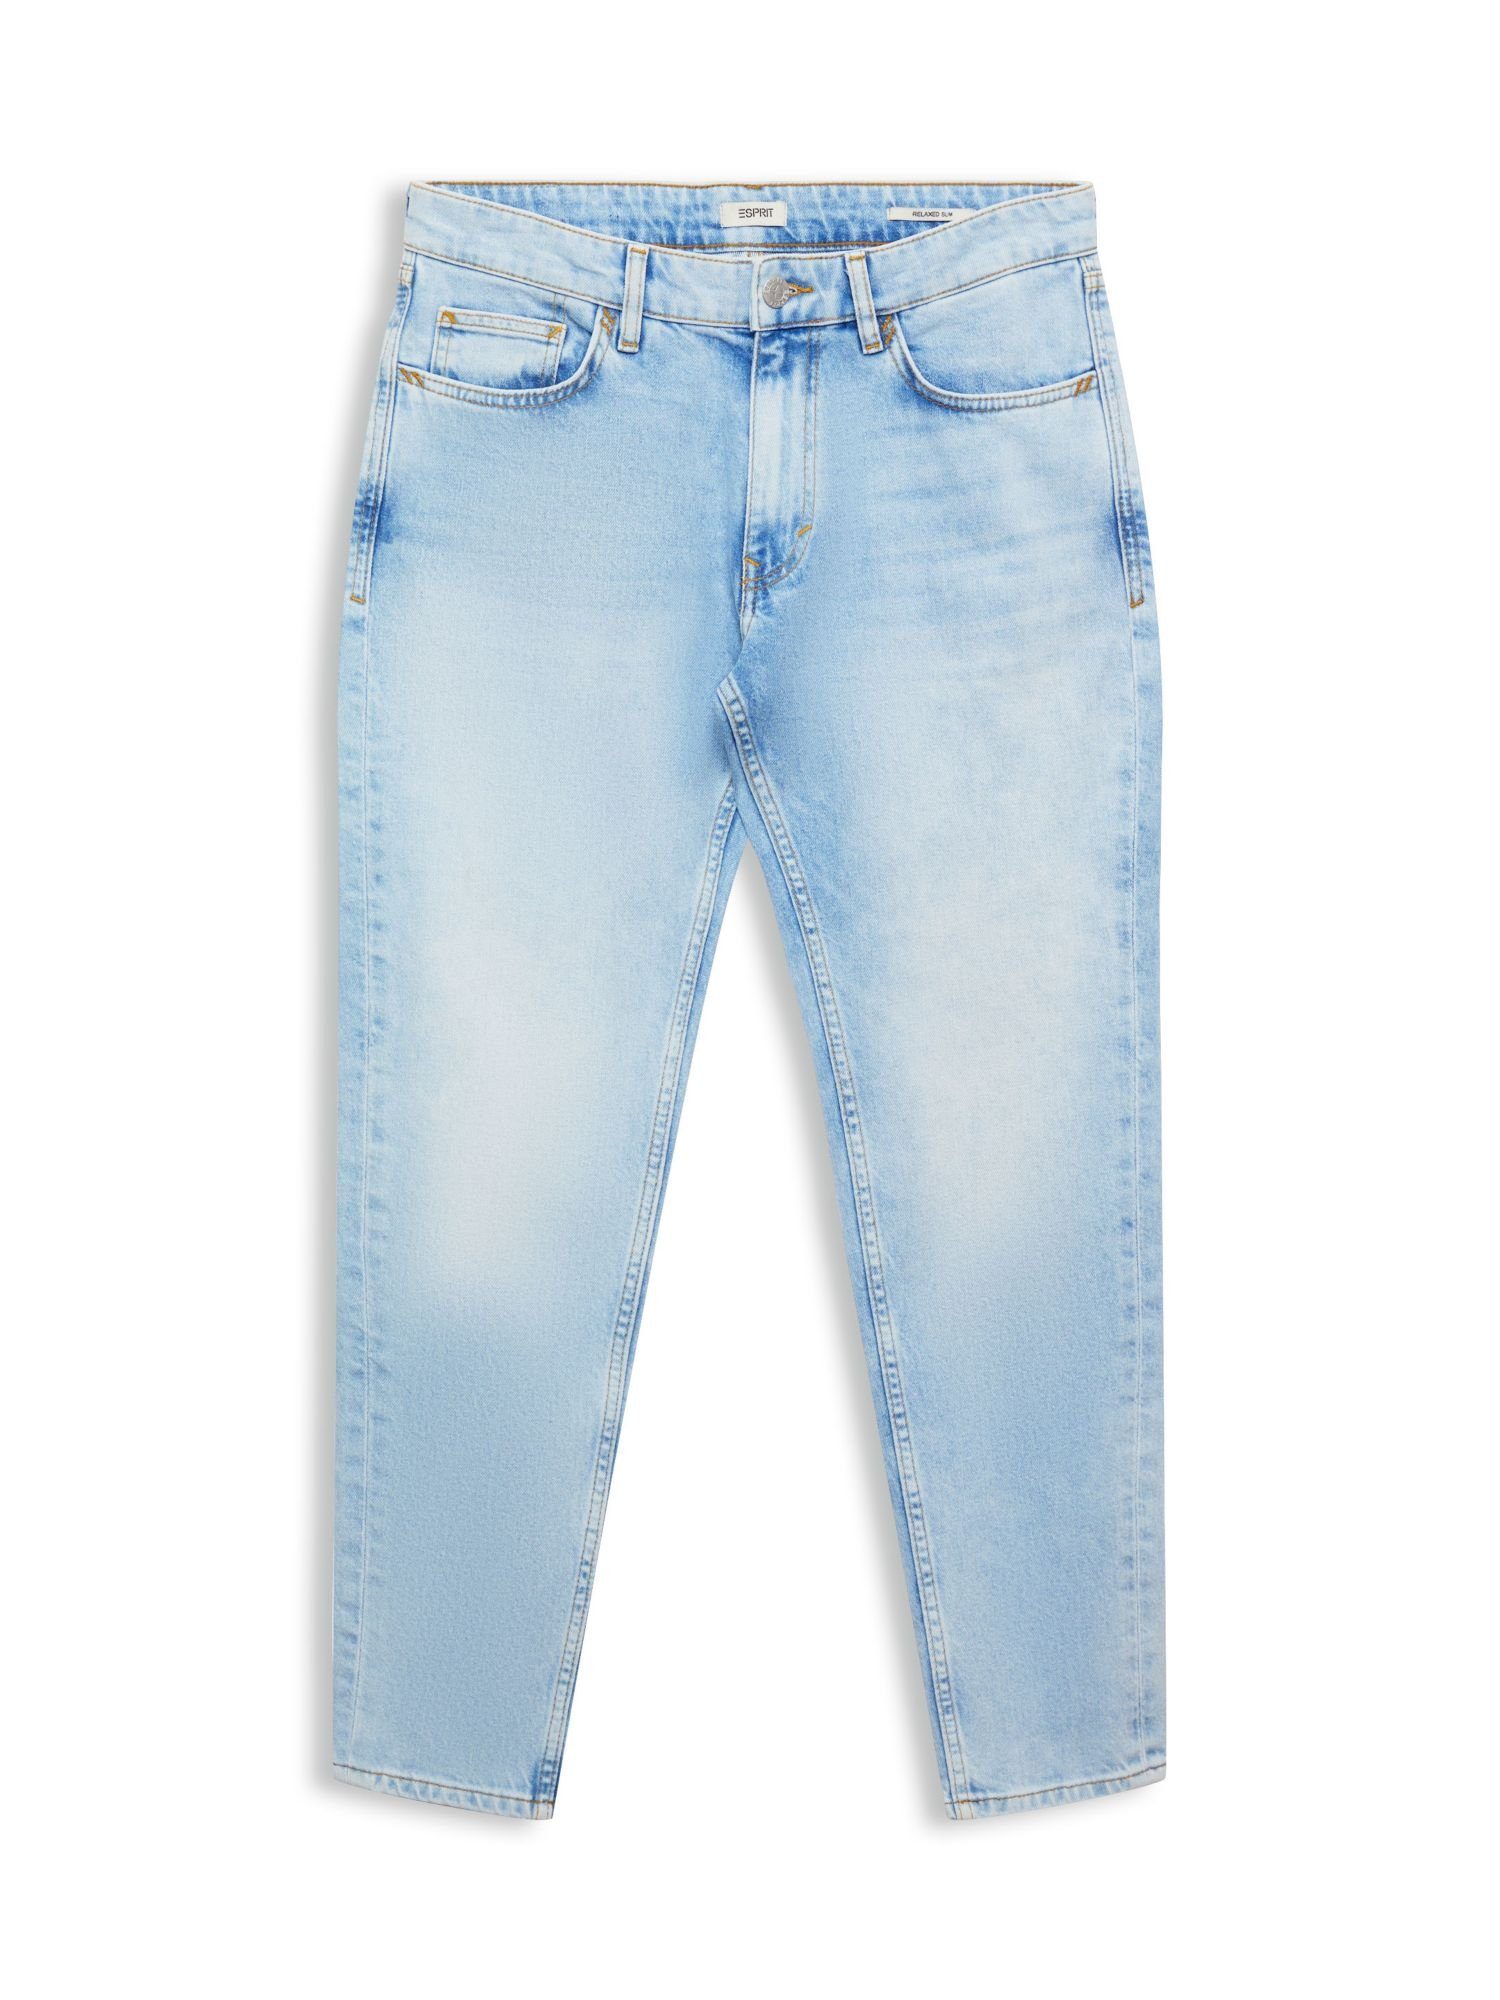 Kaufen Sie beliebte Artikel mit Rabatt! Esprit Bequeme Stretch-Jeans Lockere Jeans